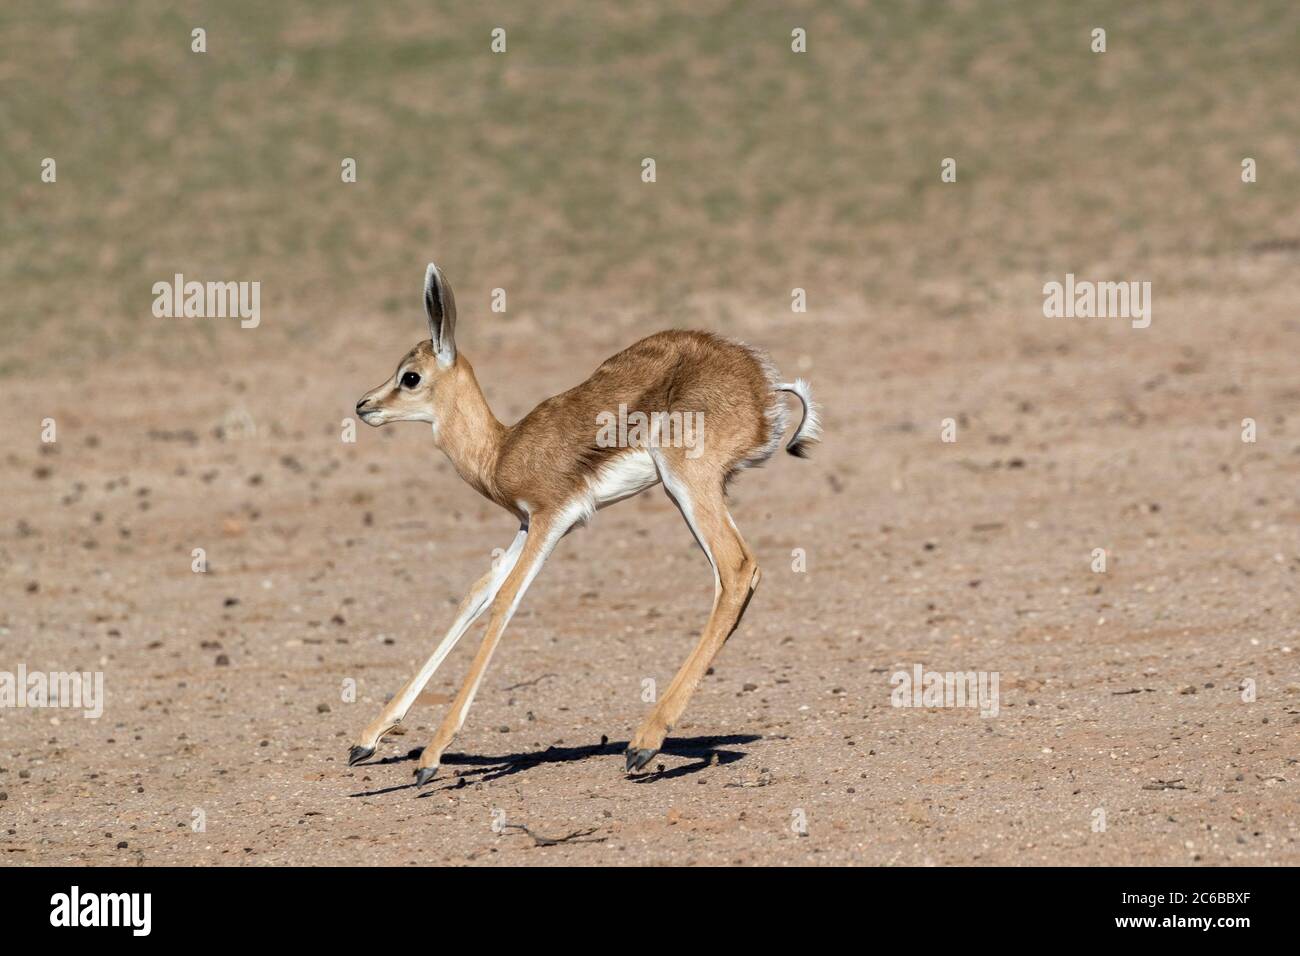 Springbok (Antidorcas marsupialis) calf, Kgalagadi Transfrontier Park, South Africa, Africa Stock Photo